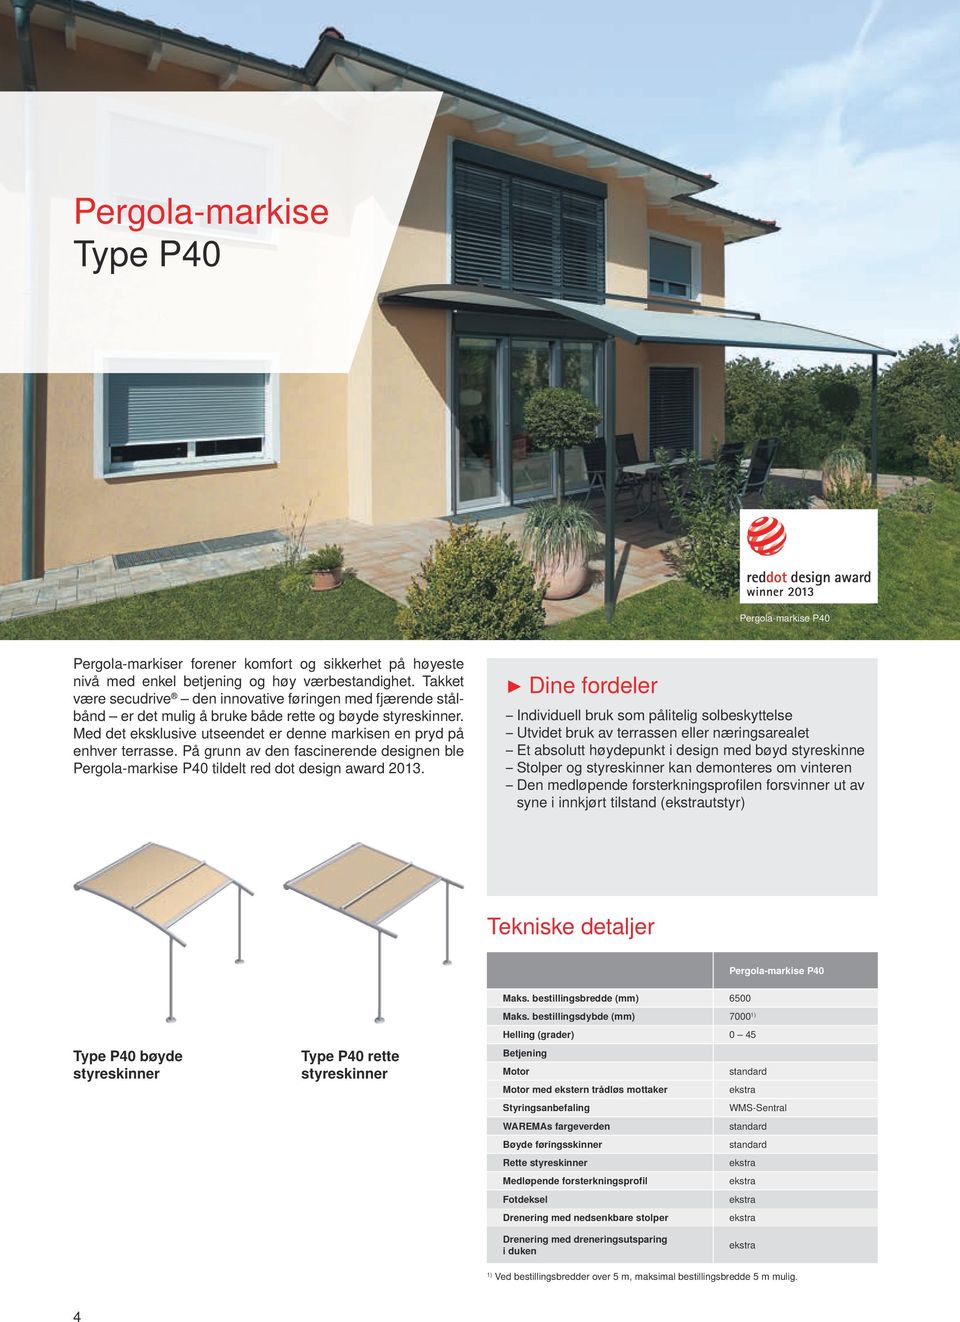 På grunn av den fascinerende designen ble Pergola-markise P40 tildelt red dot design award 2013.